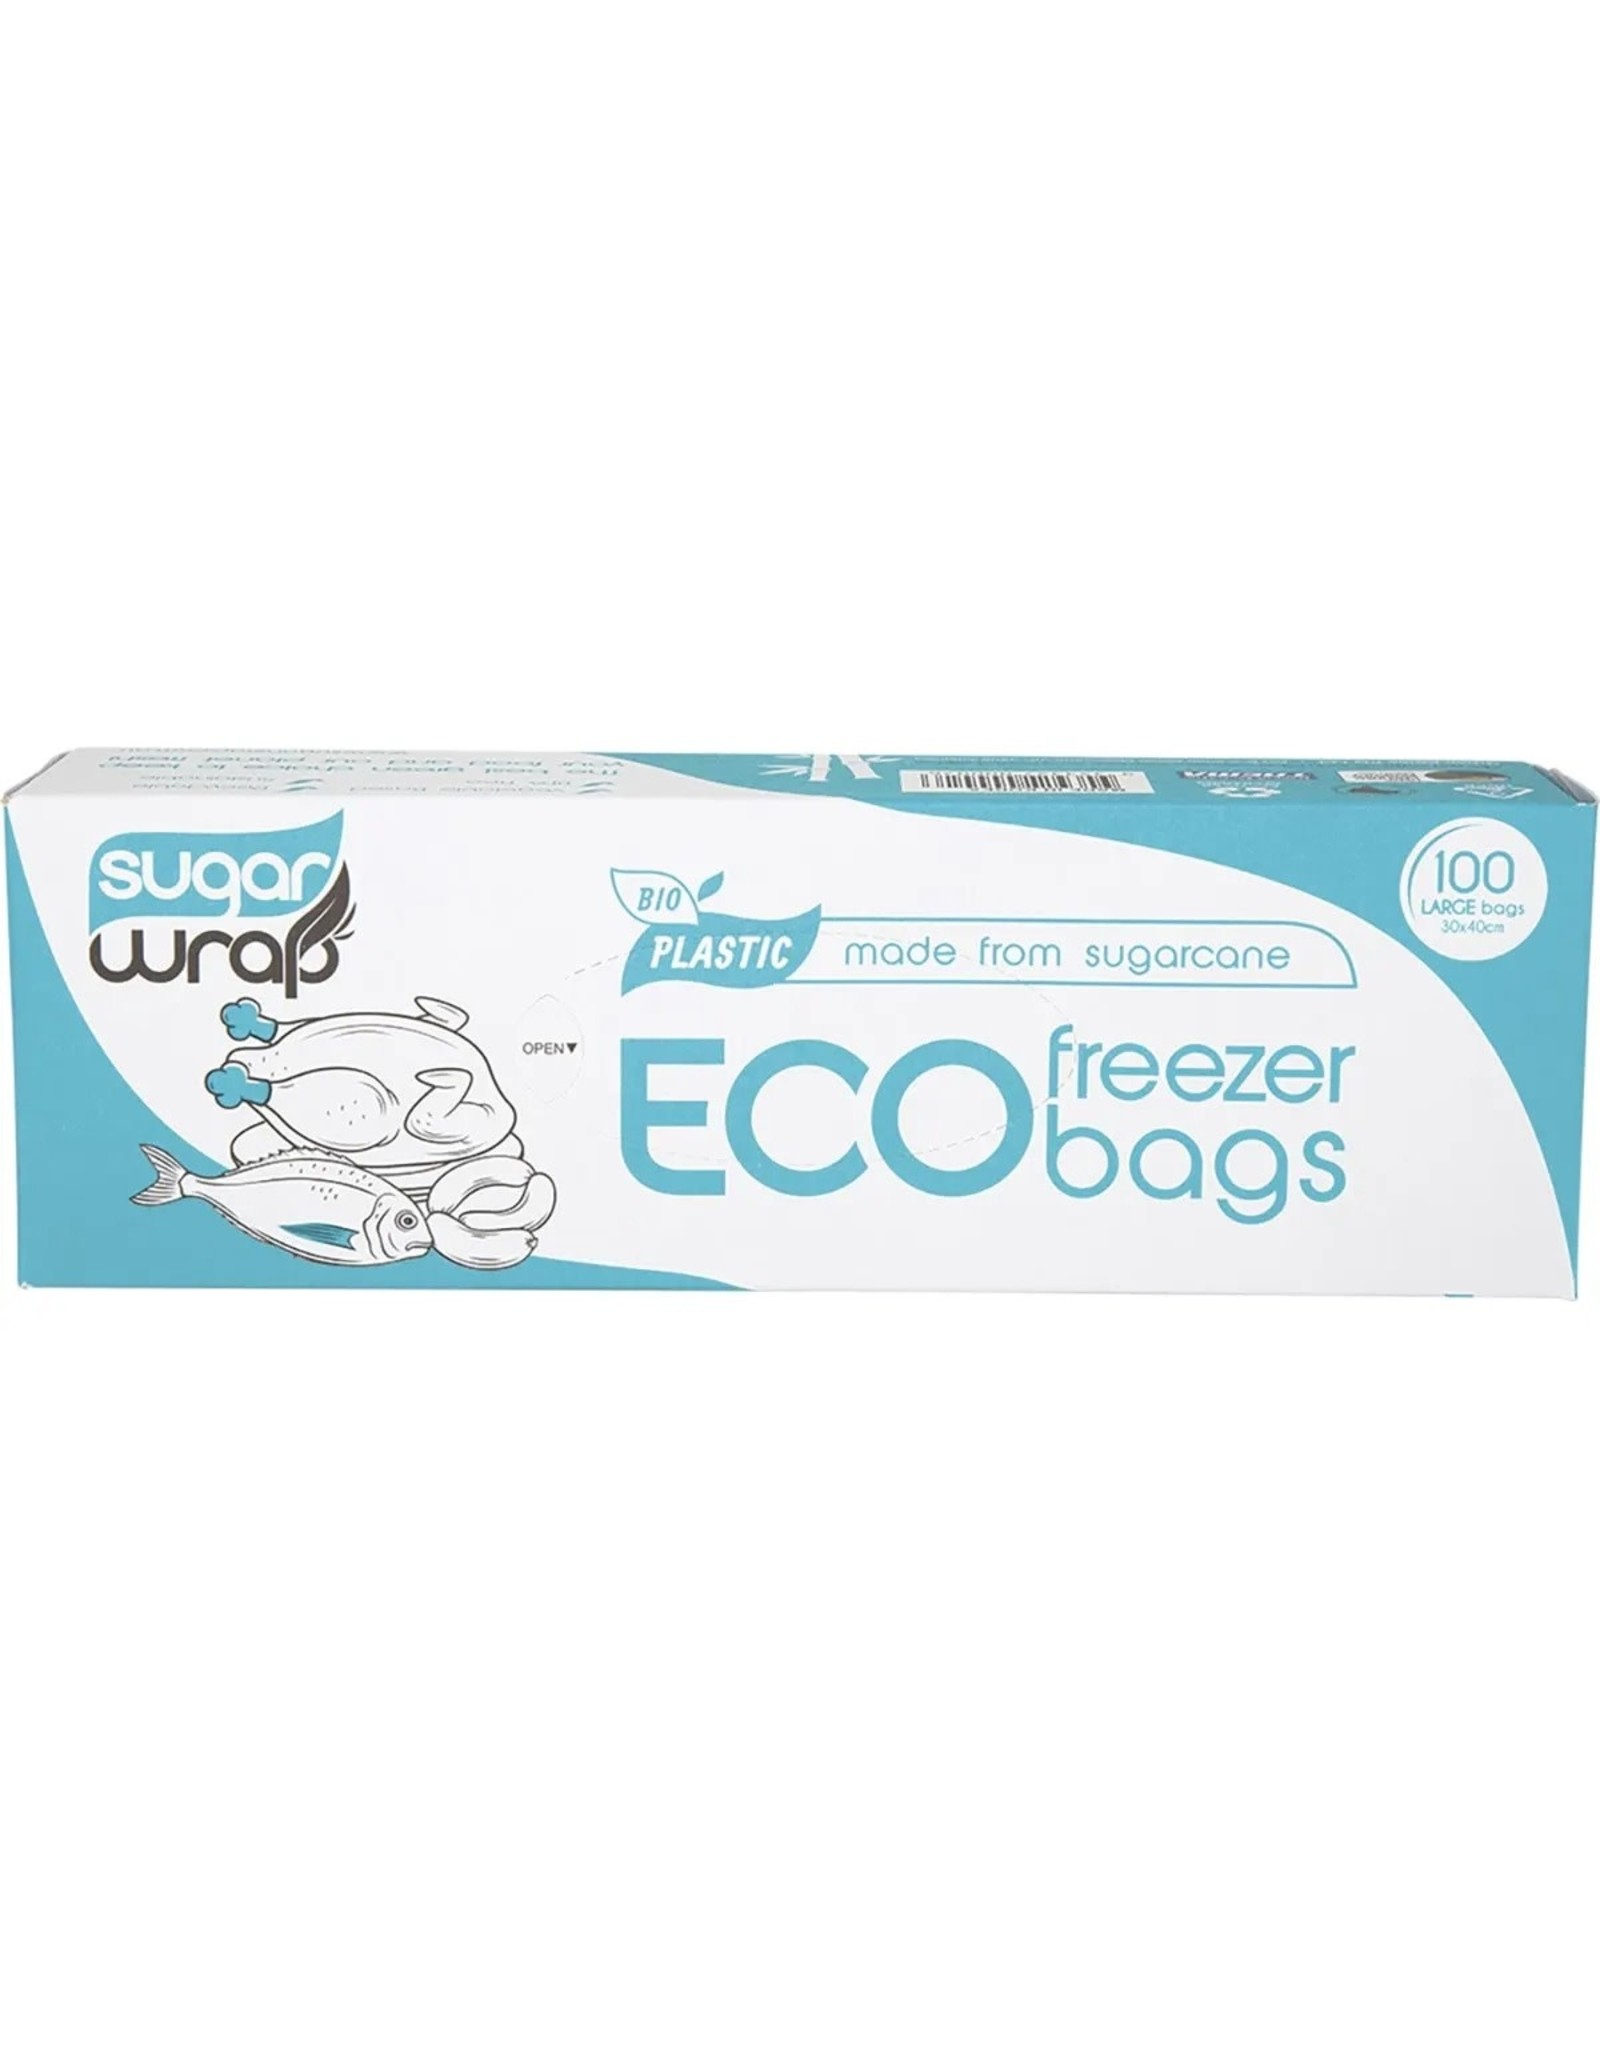 Sugarwrap Eco Freezer Bags Made from Sugarcane 100pk